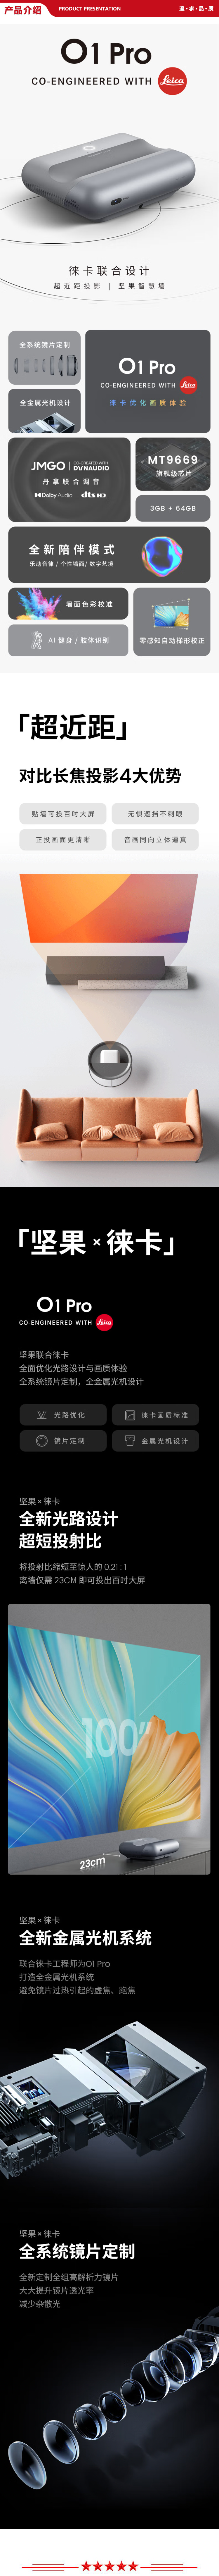 O1 Pro-.jpg